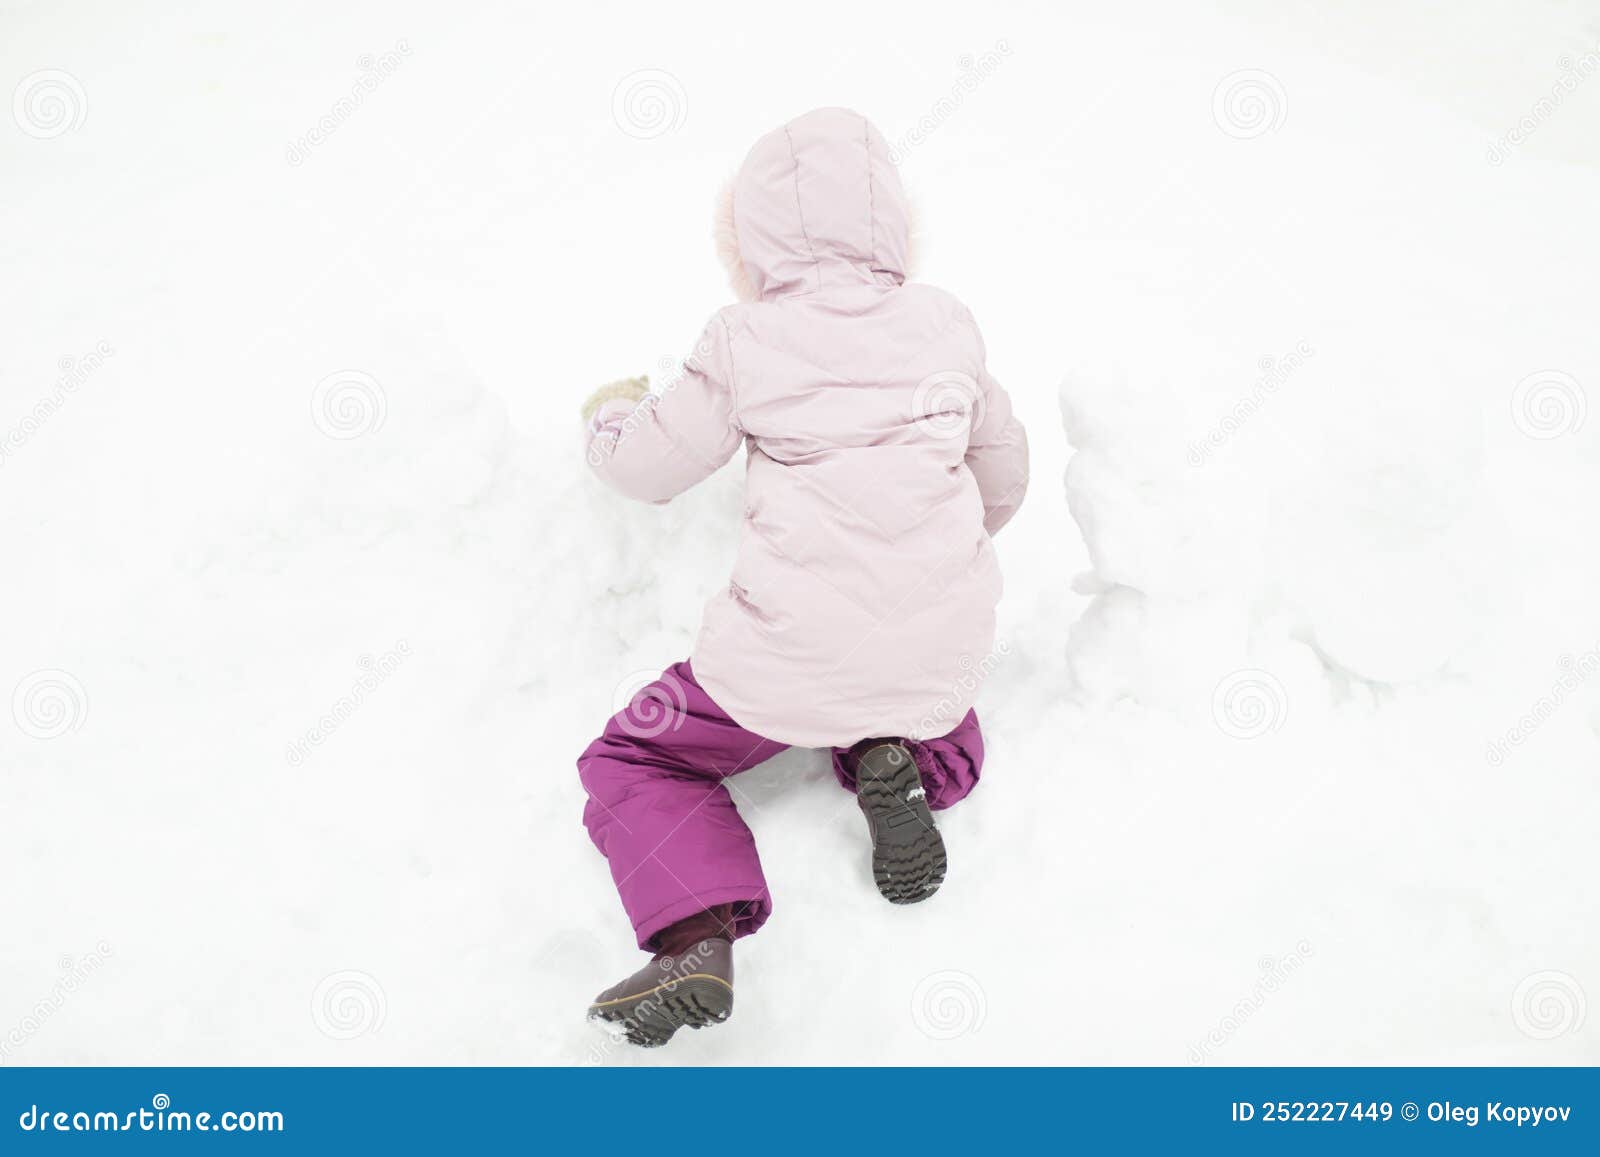 Niños Juega En La Nieve. Niña En Invierno. Ropa De Abrigo Para Niños Imagen  de archivo - Imagen de ropa, cabrito: 252227449